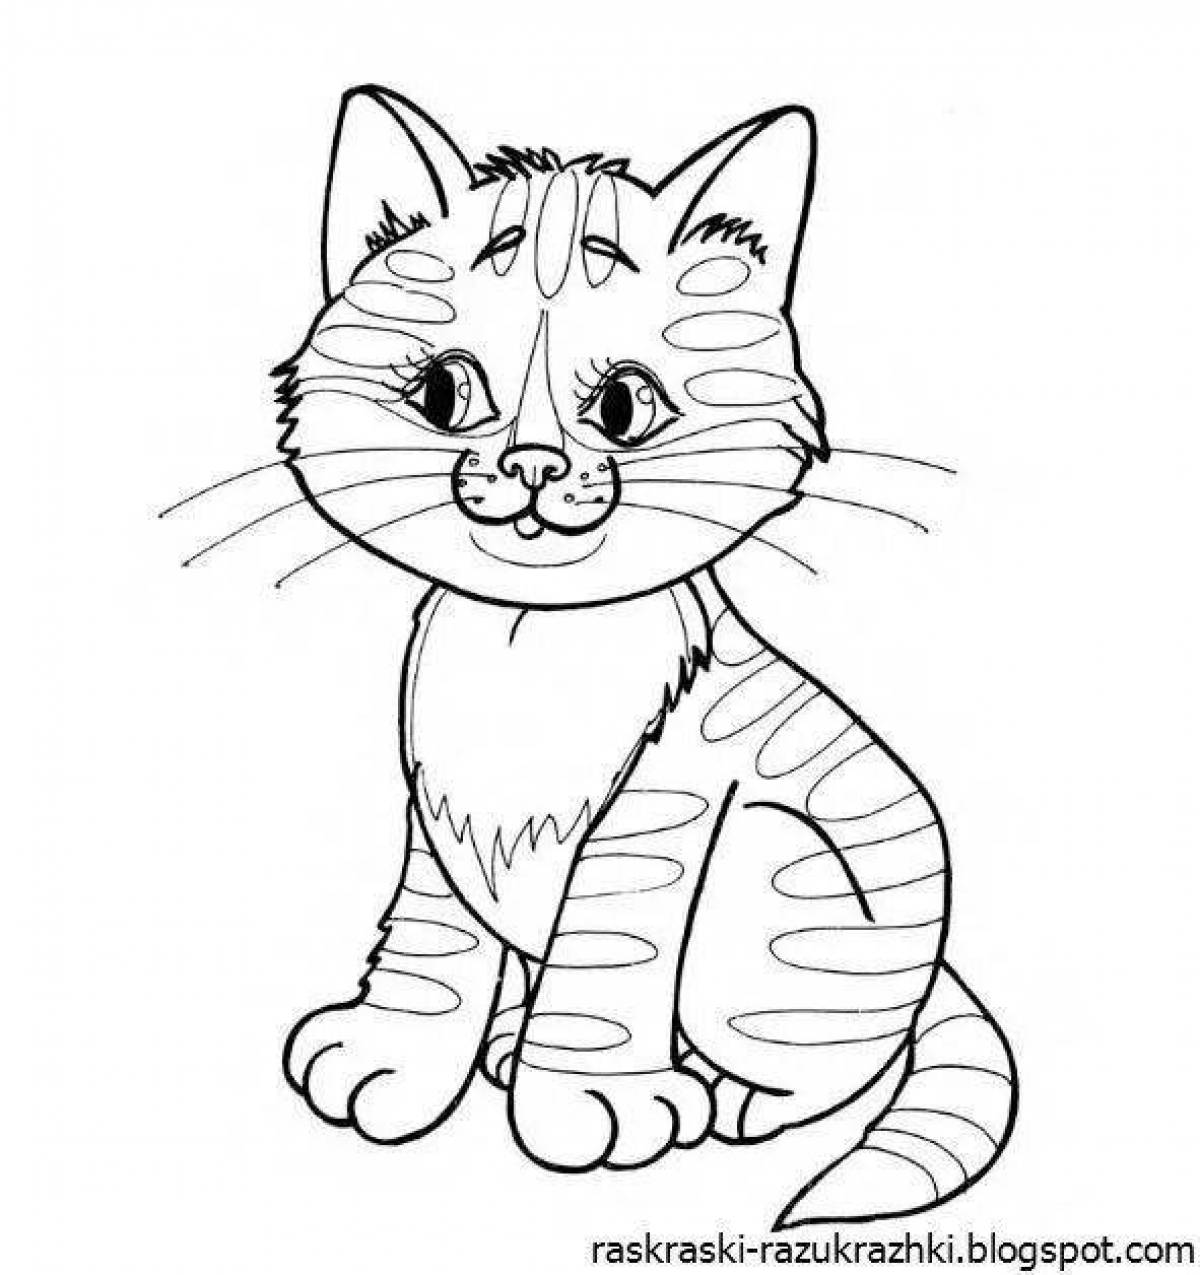 Увлекательная раскраска котенка для детей 2-3 лет